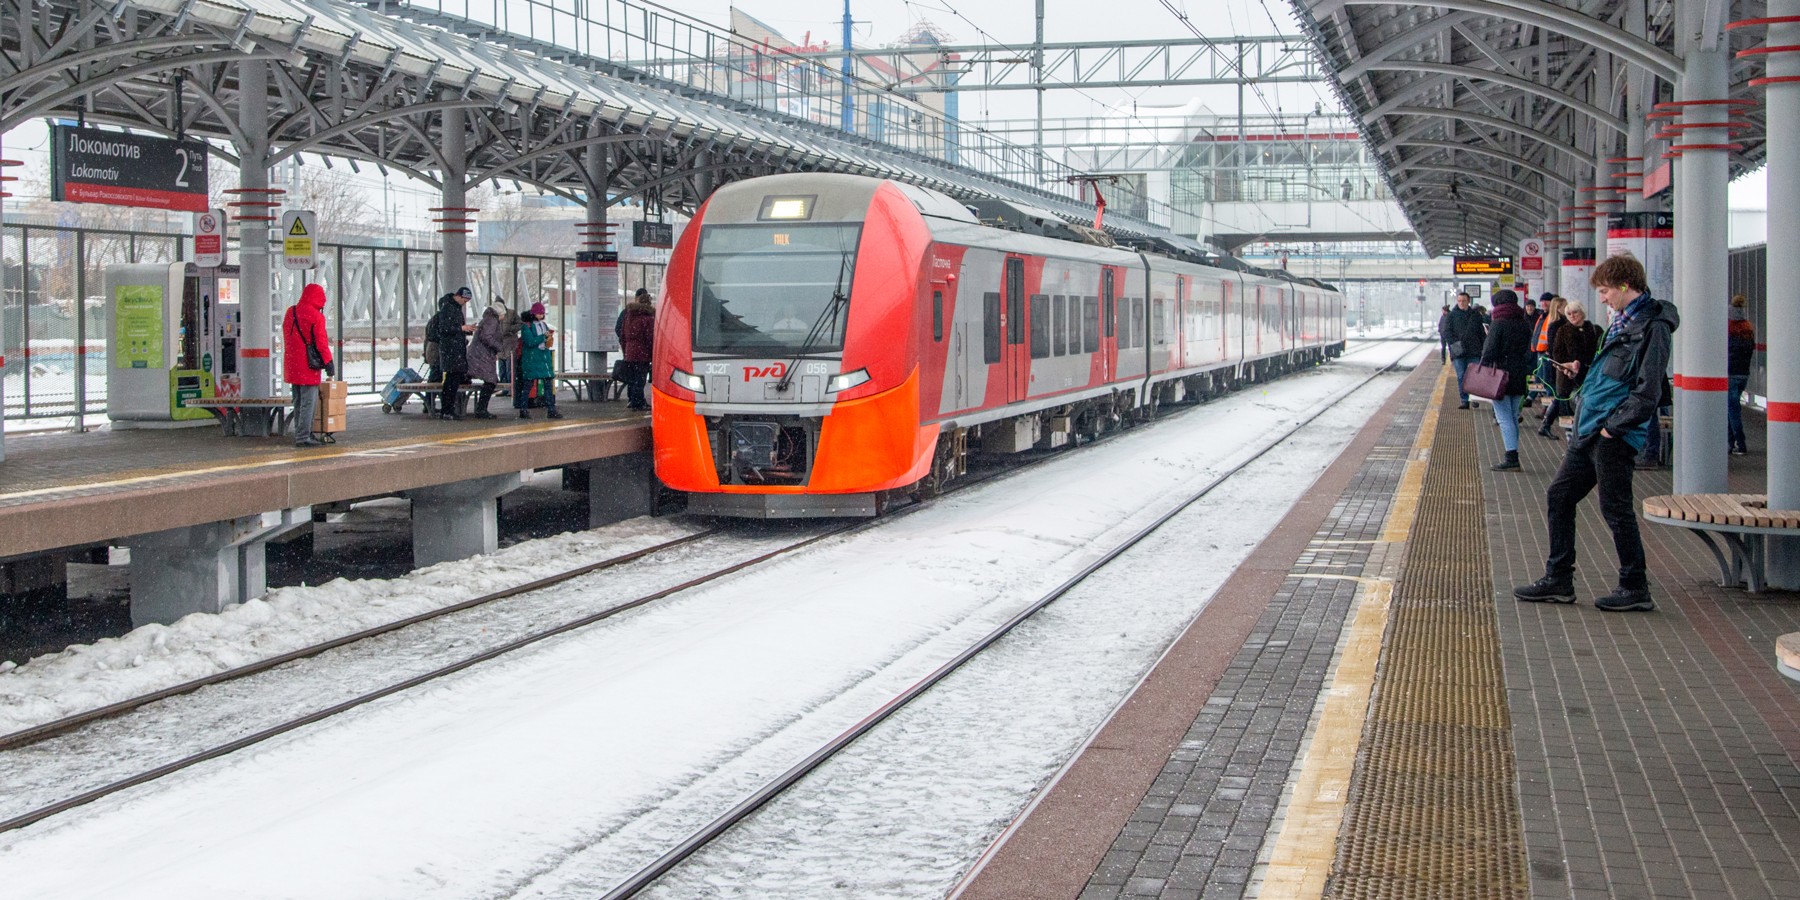 Проездные в метро цена 2020 тарифы москва